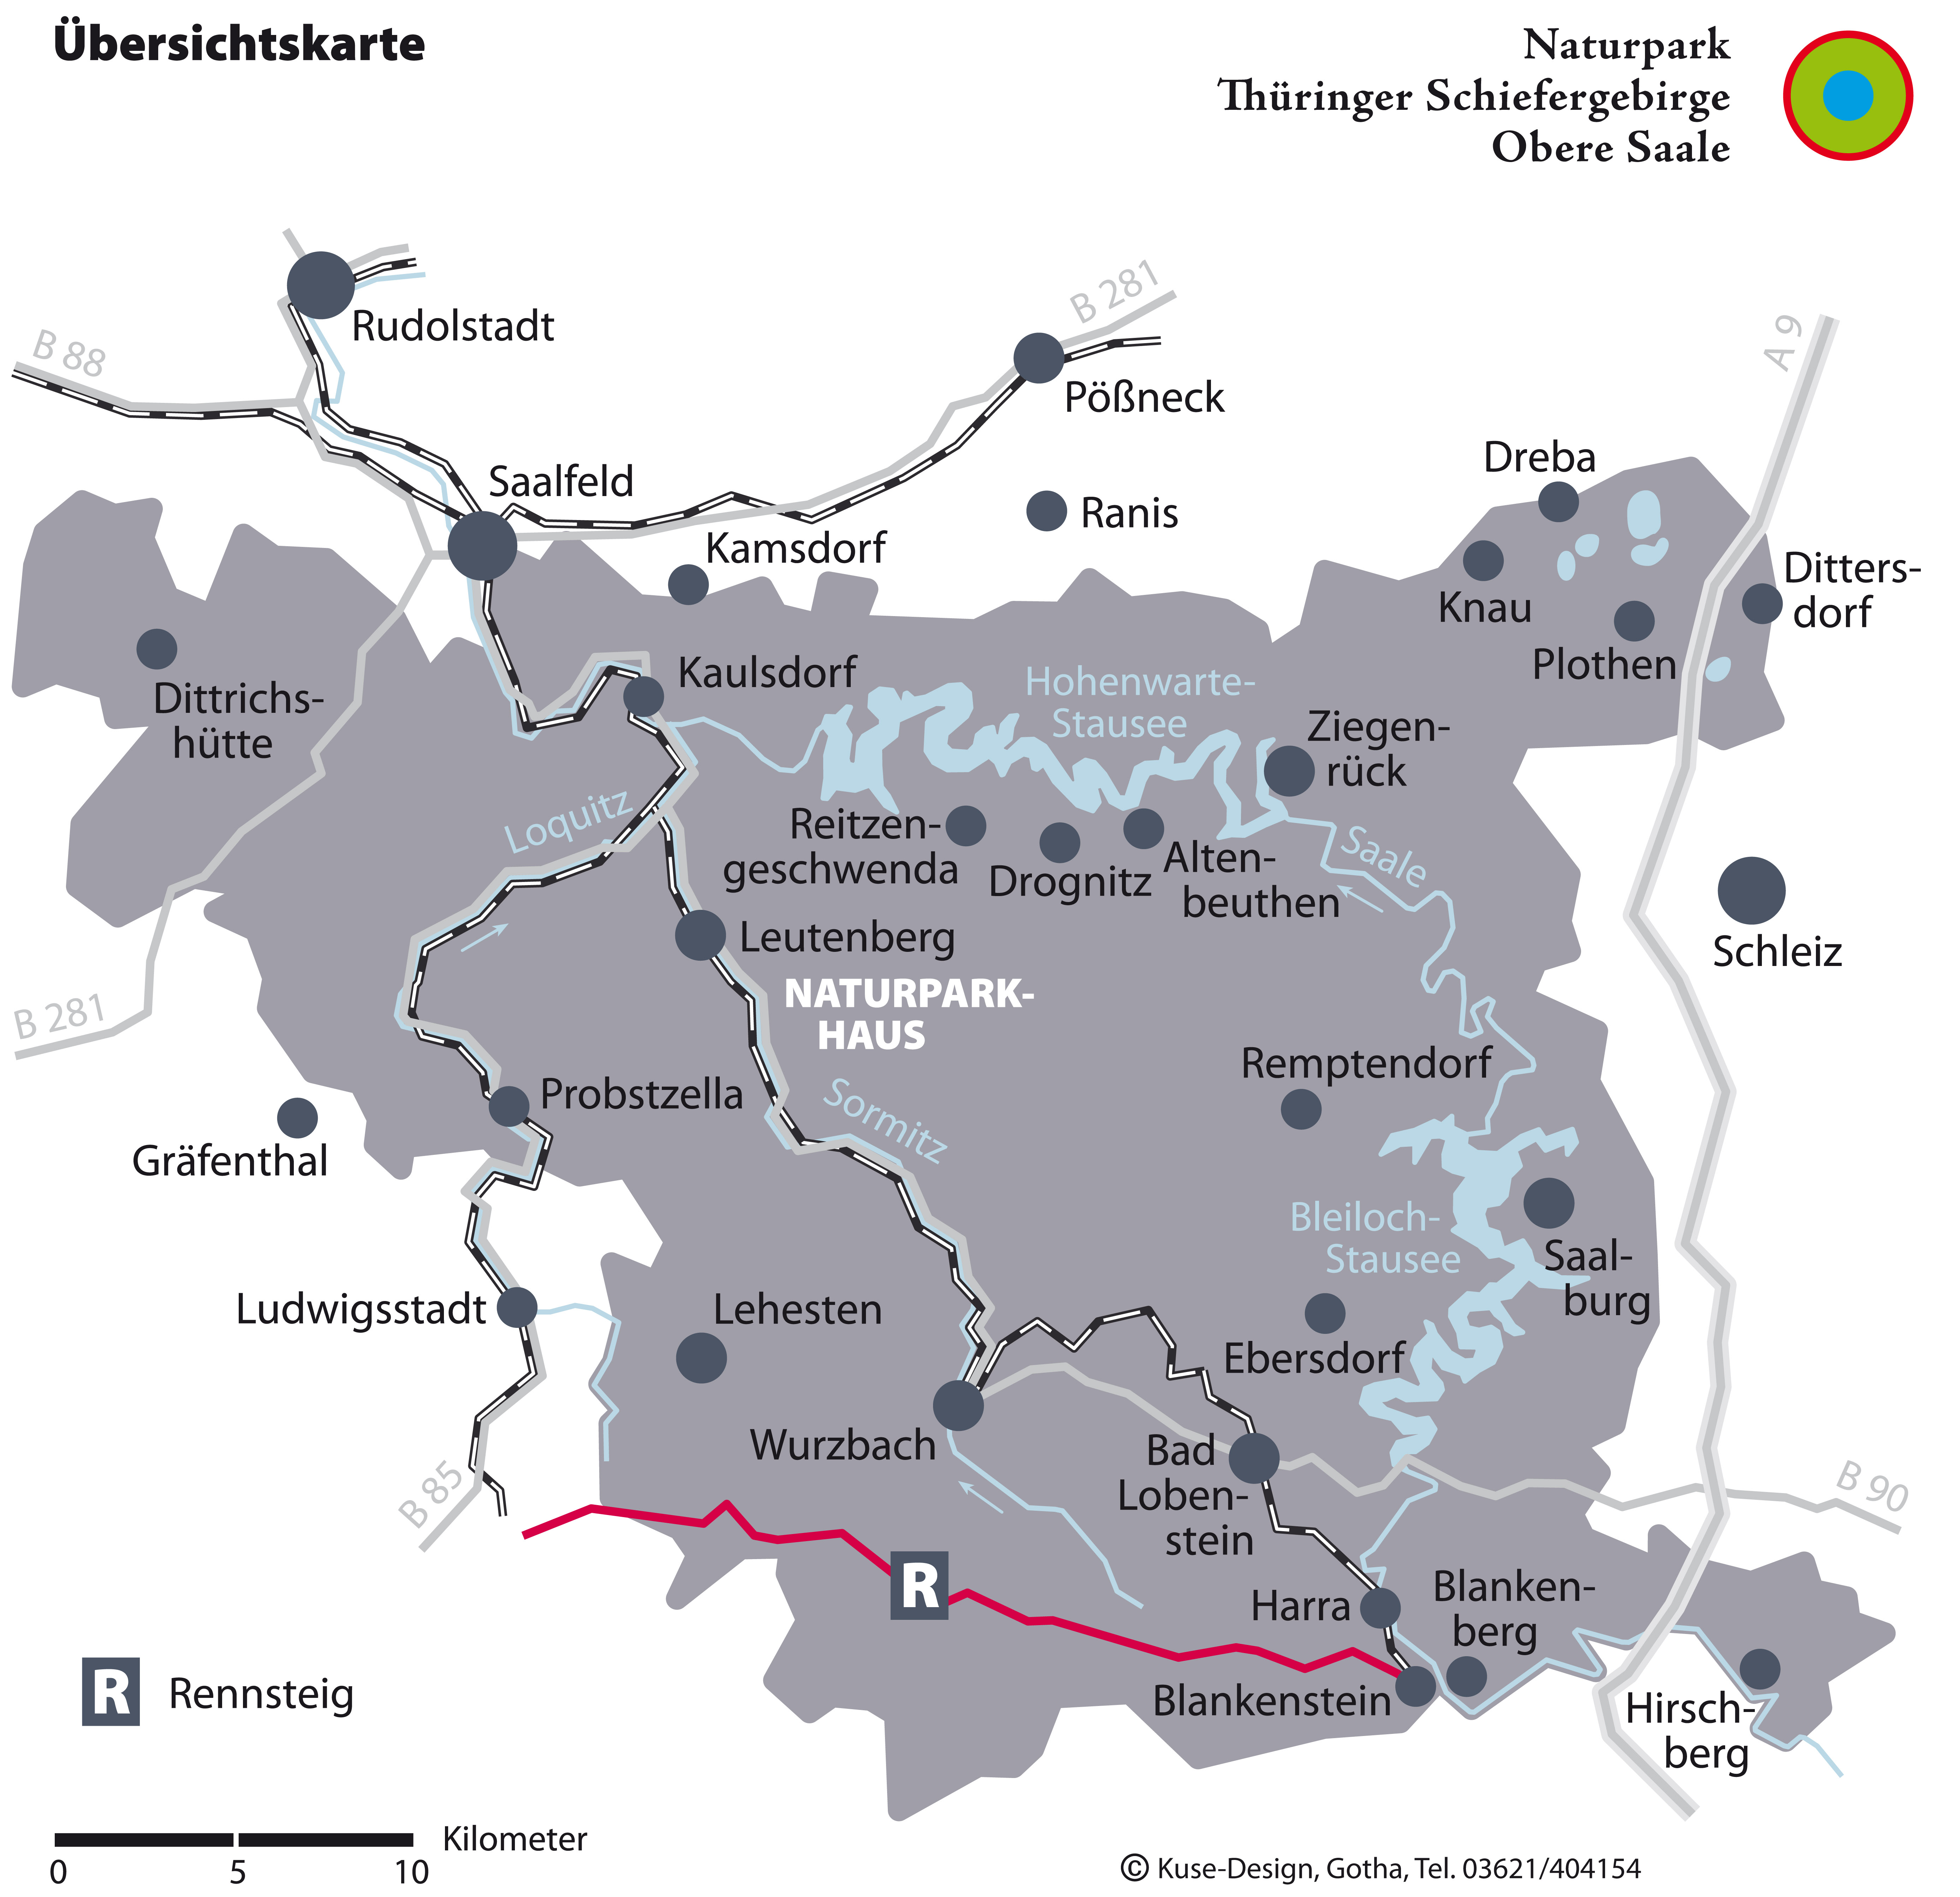 Thüringer Schiefergebirge - Feengrottenstadt Saalfeld